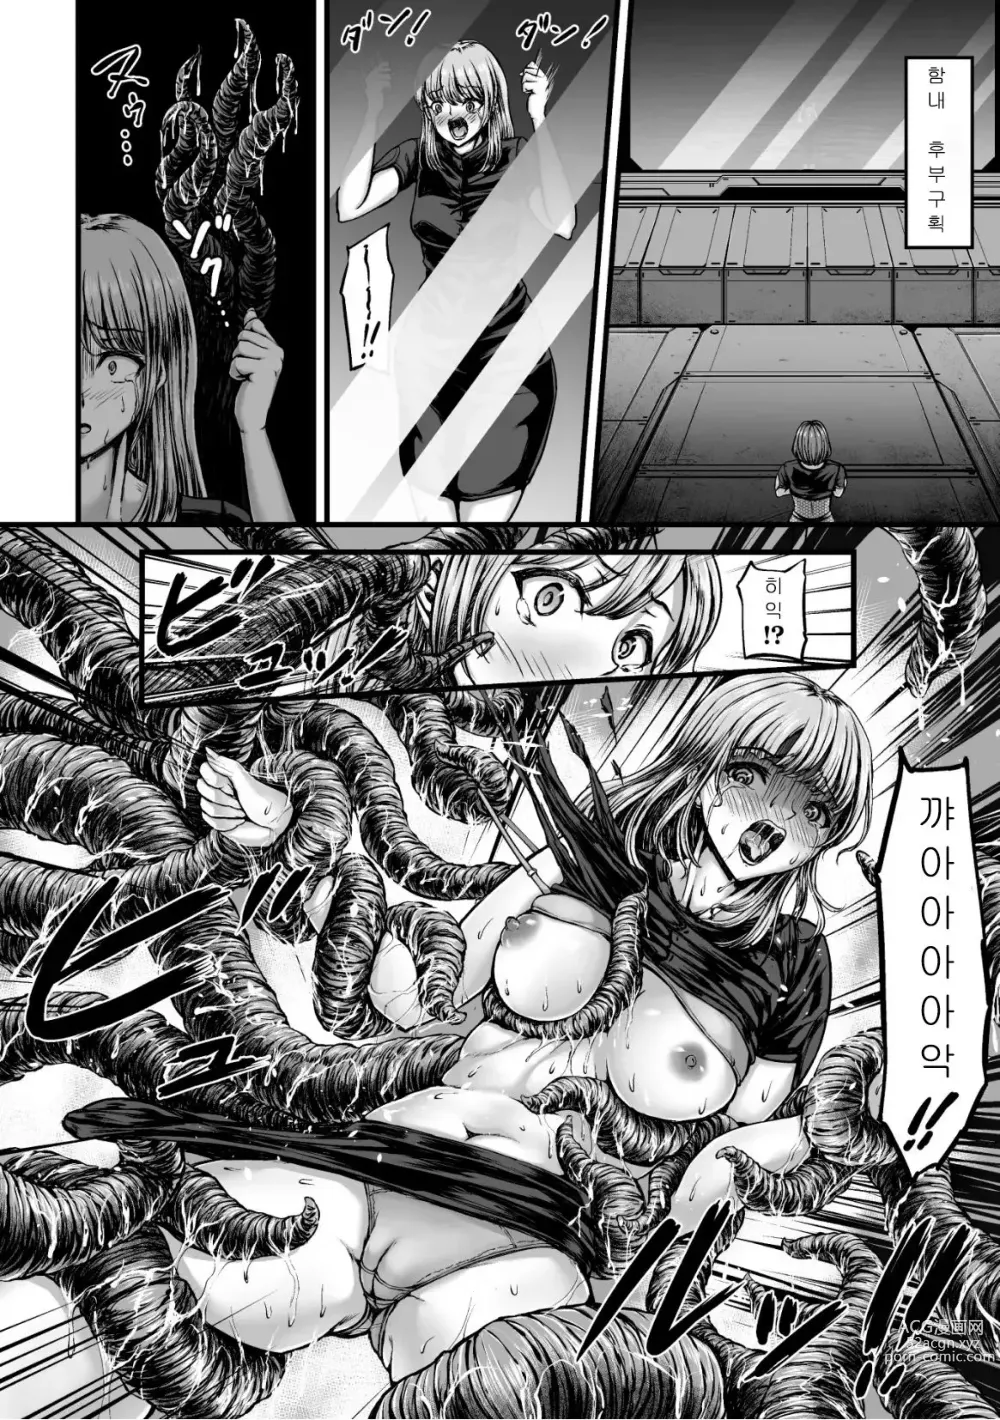 Page 4 of manga Kangoku Tentacle Battleship Episode 1